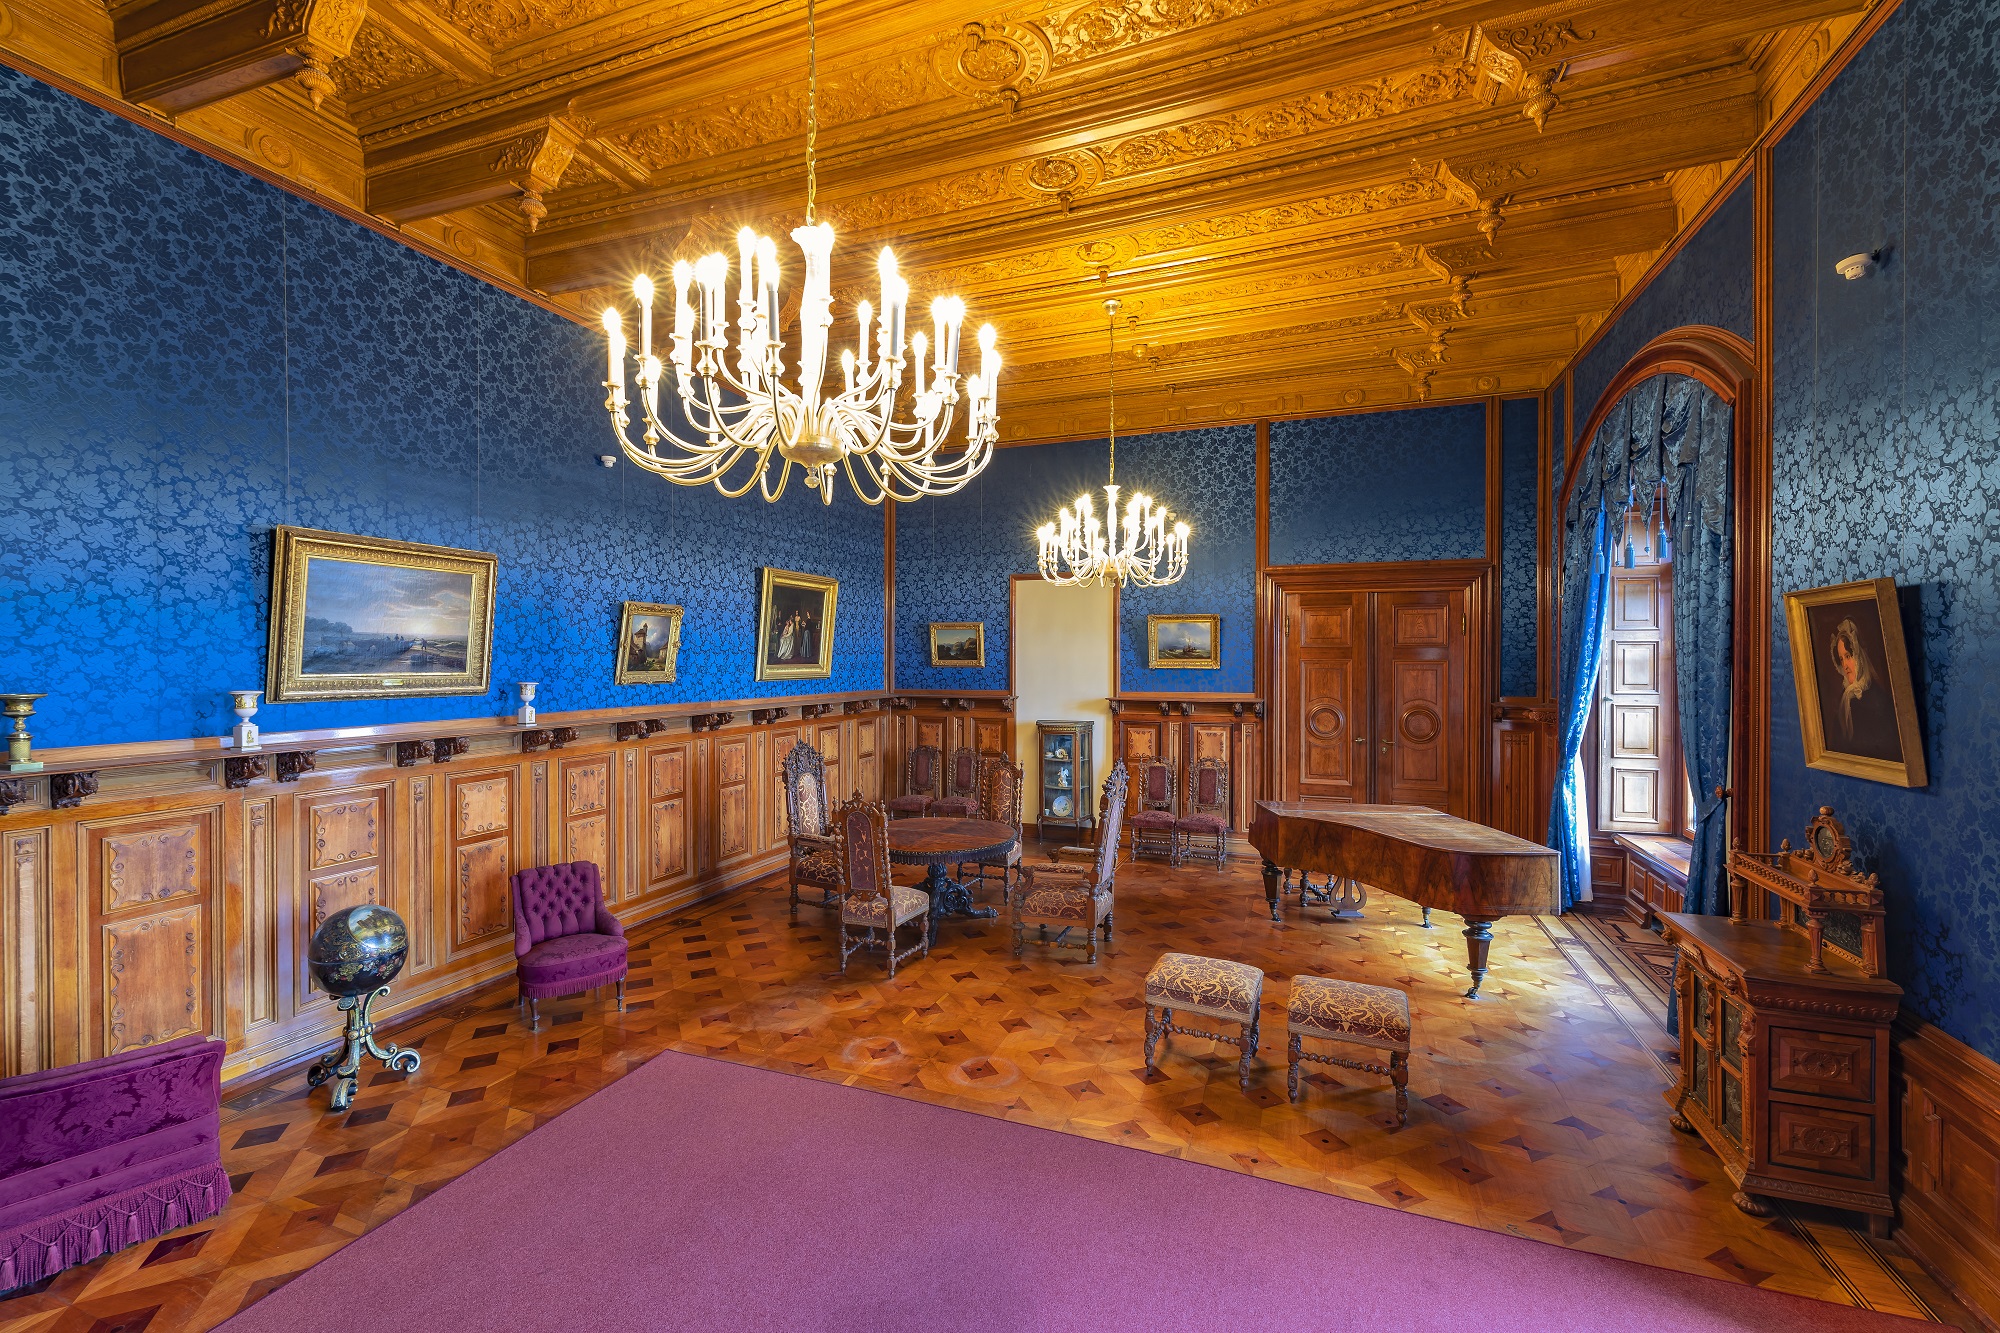 Wohnzimmer im Schweriner Schloss © Timm Allrich  ©Staatliche Schlösser Gärten und Kunstsammlungen M-V